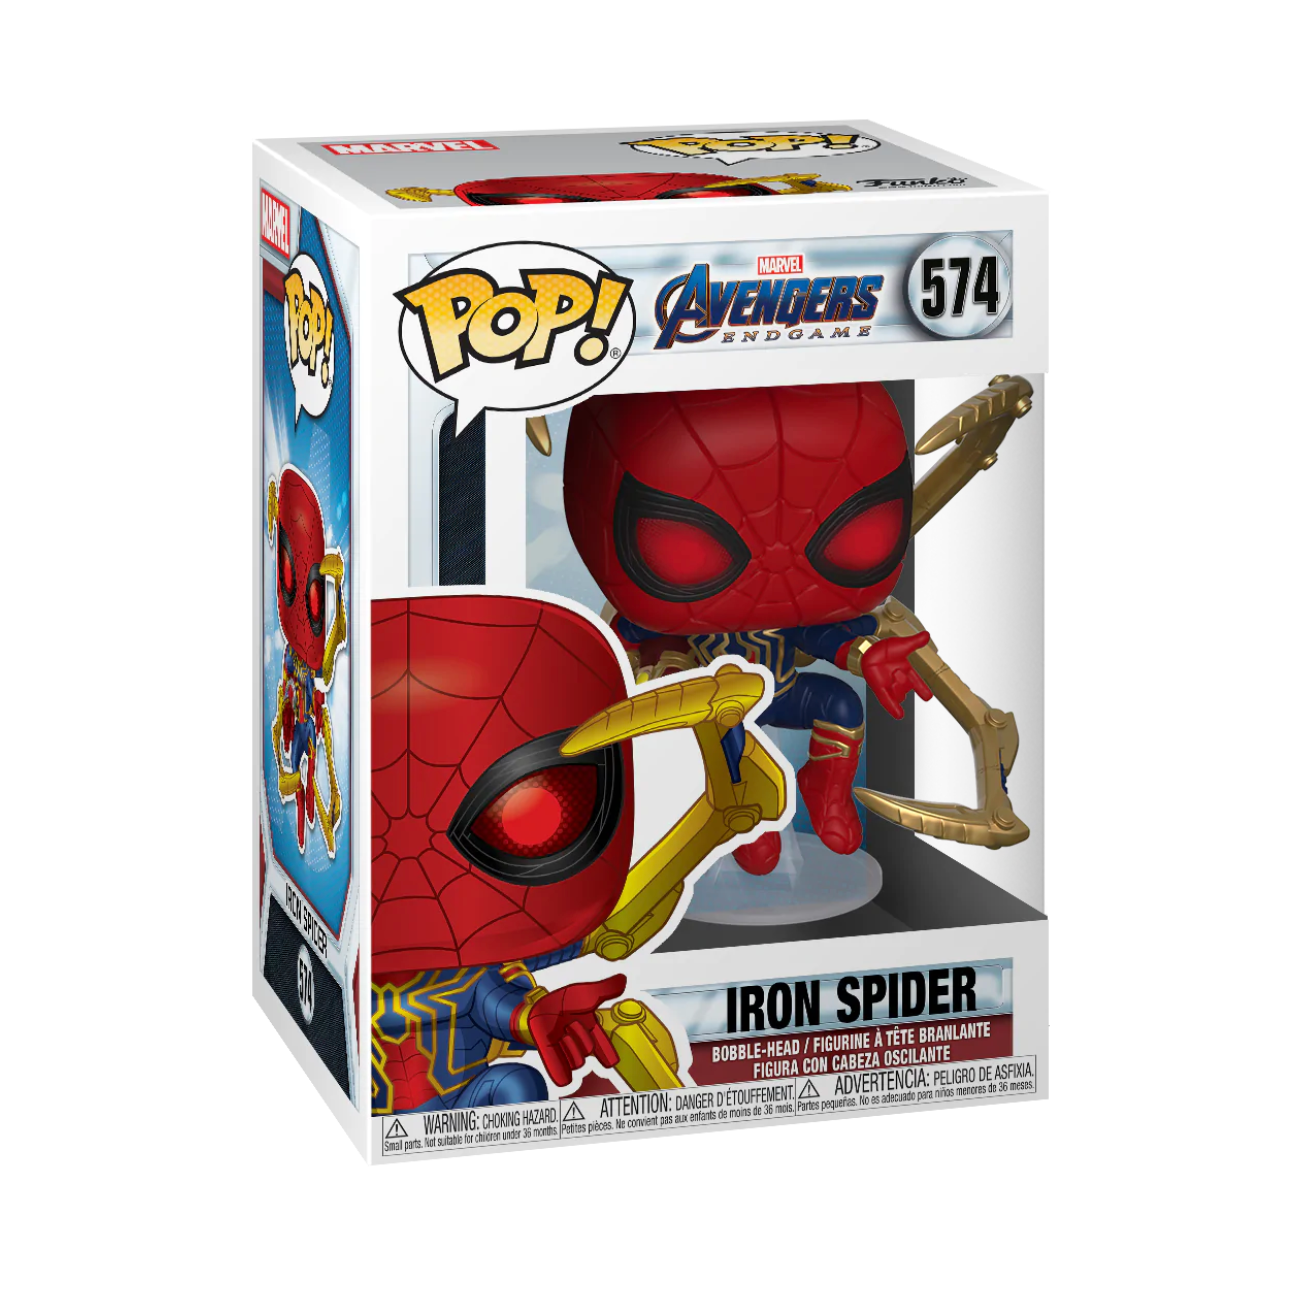 Marvel: Avengers Endgame - Iron Spider Pop! Vinyl Figure (574)